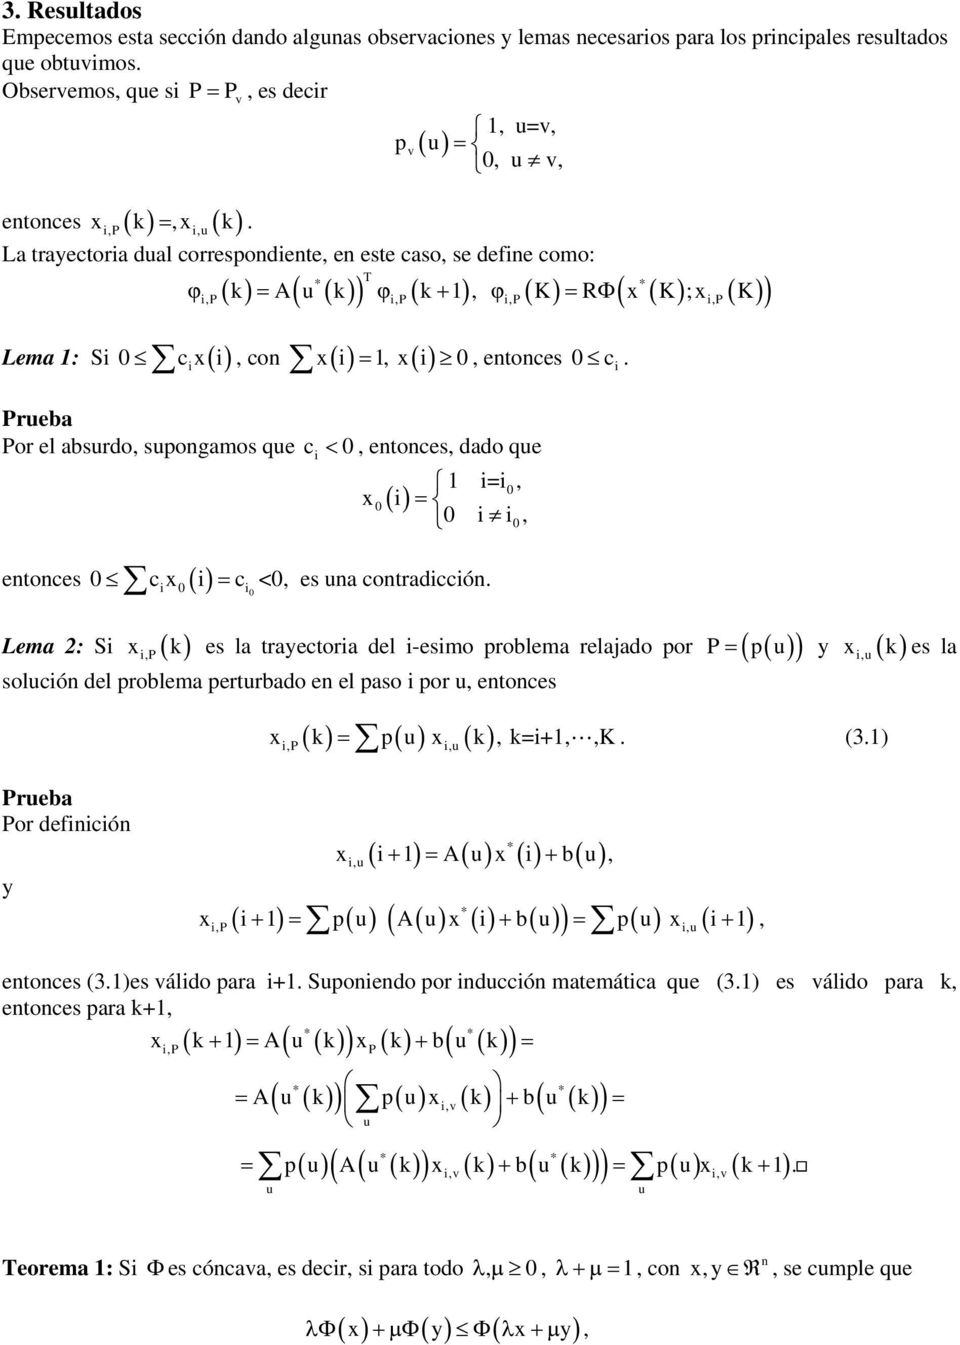 p 1, =, 0,, Preba Por el absrdo, spogaos qe c 0, etoces, dado qe x 0 1 =, 0 0, 0 etoces 0 cx0 c 0 <0, es a cotradccó.